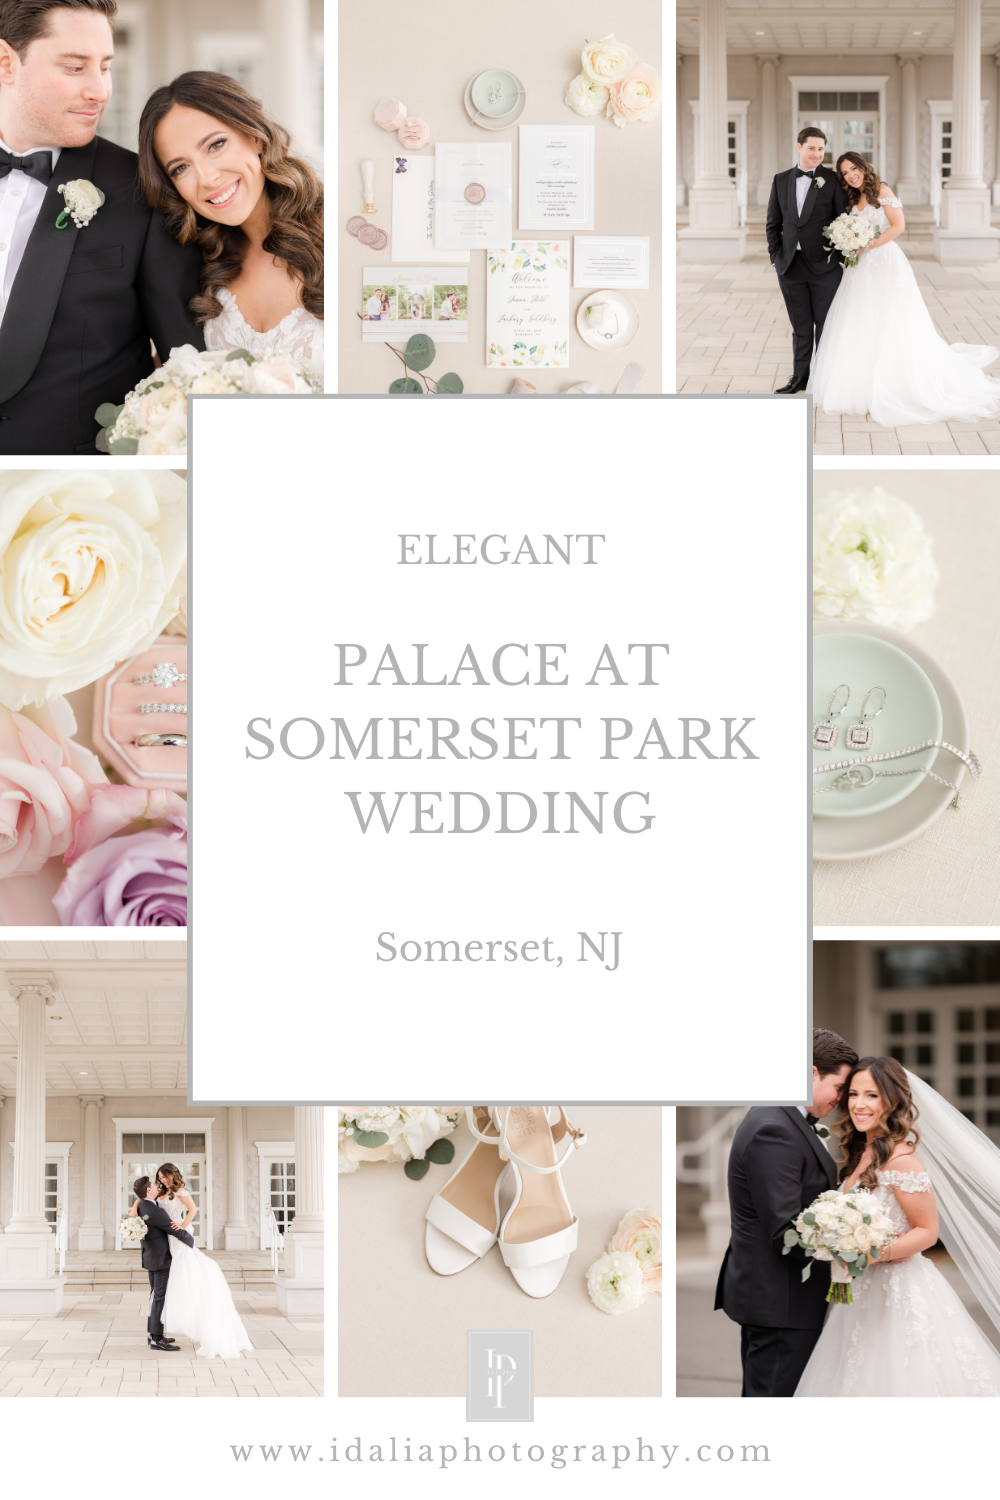 Palace at Somerset Park wedding with Jewish ceremony photographed by Idalia Photography, NJ wedding photographer